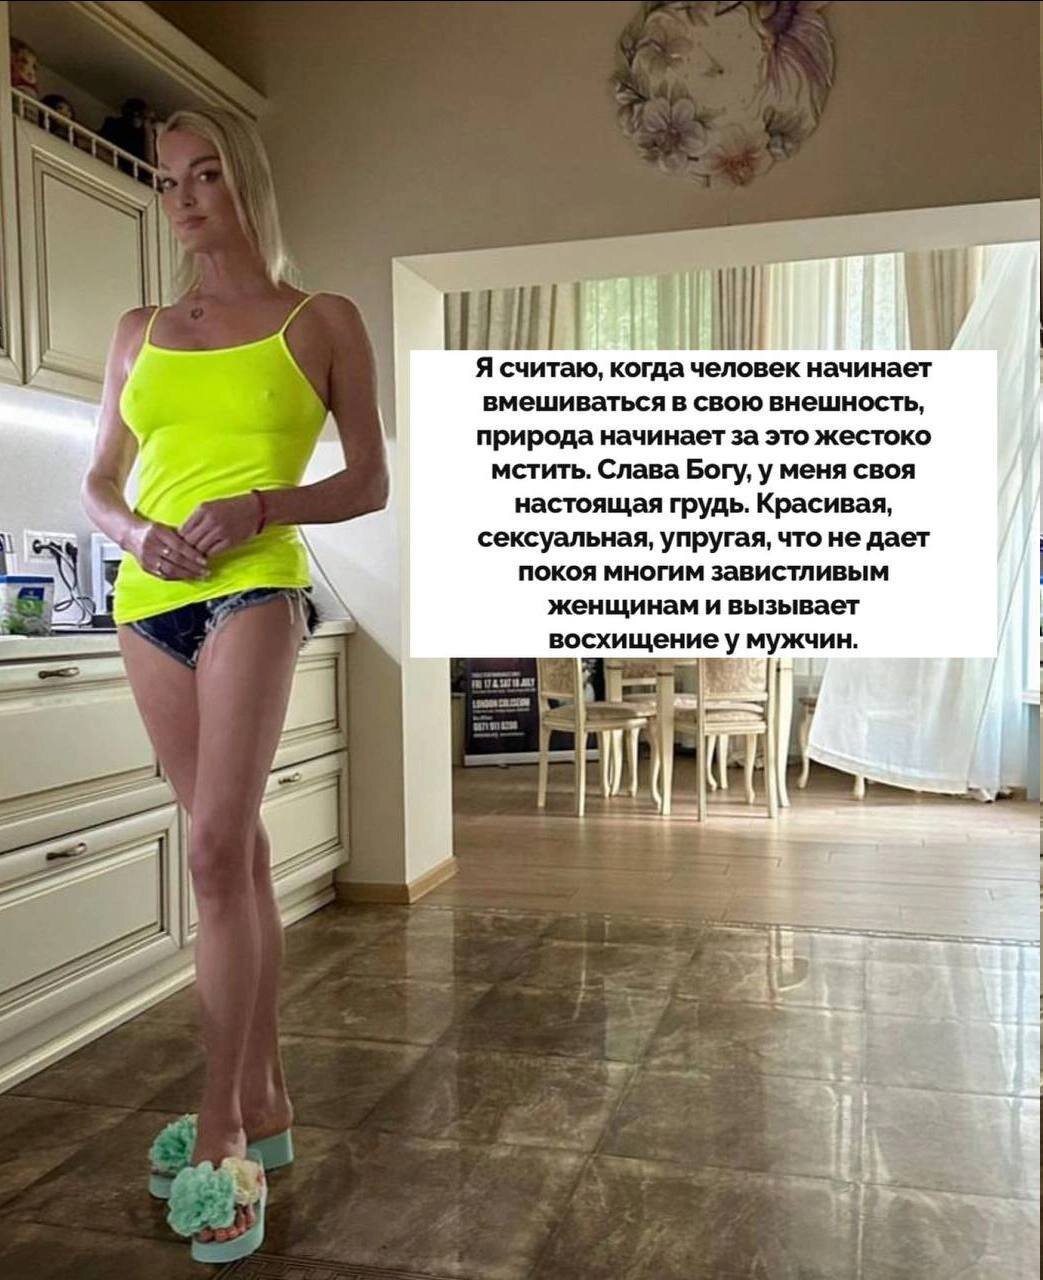 Красивая, сексуальная, упругая»: Анастасия Волочкова как следует расхвалила  свою голую грудь. ТОП фото голой Анастасии Волочковой, в грудях которой нет  ни грамма силикона